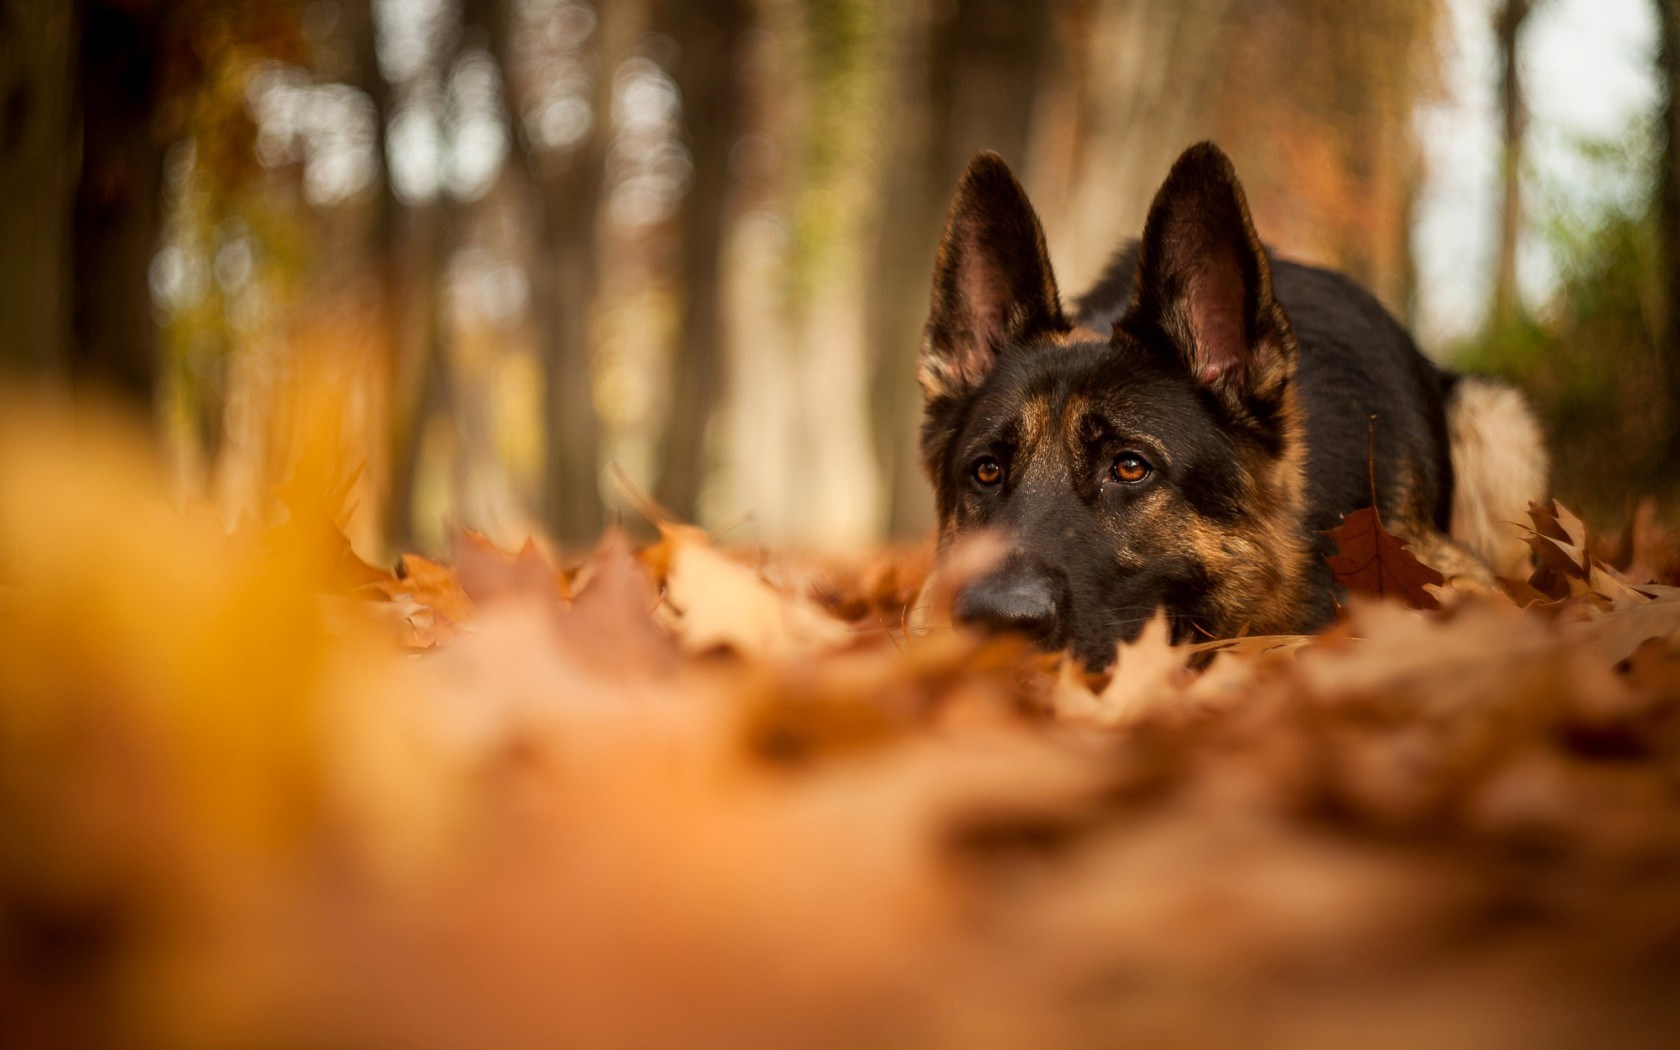 Dogs Autumn Wallpaper - Wallpaper, High Definition, High Quality, Widescreen